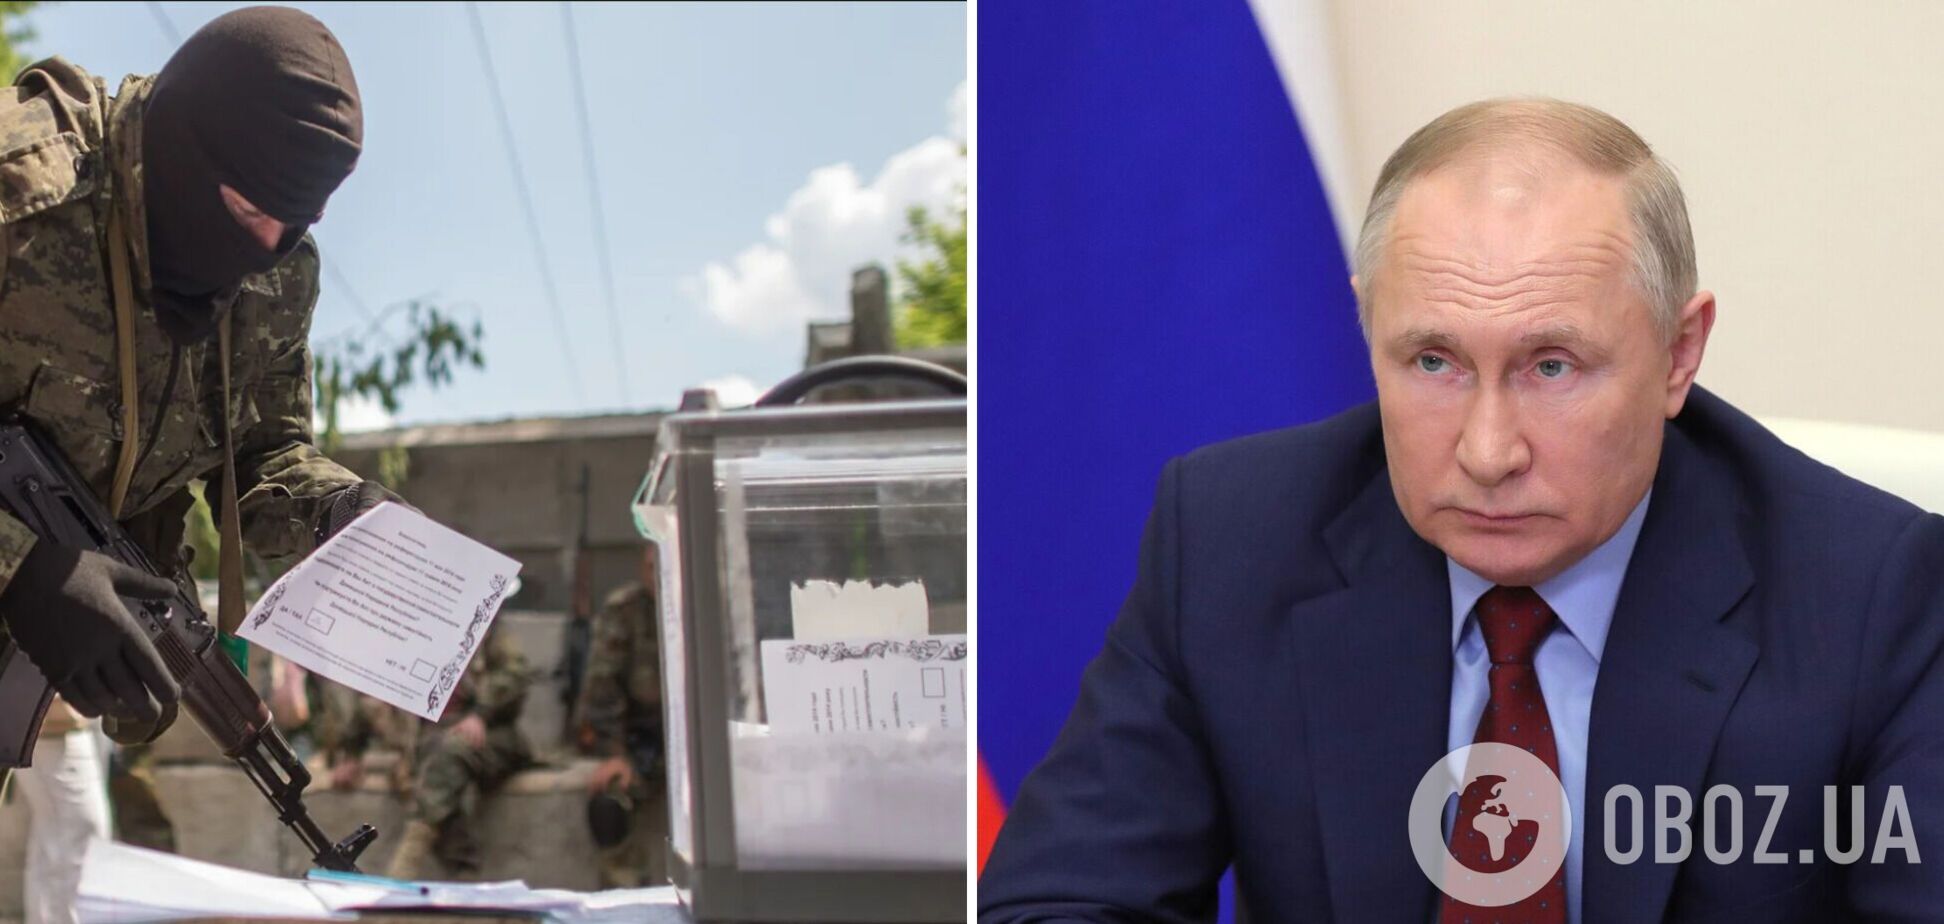 Росія може влаштувати 'референдум' на захоплених територіях України у серпні: ЗМІ дізналися про підготовку